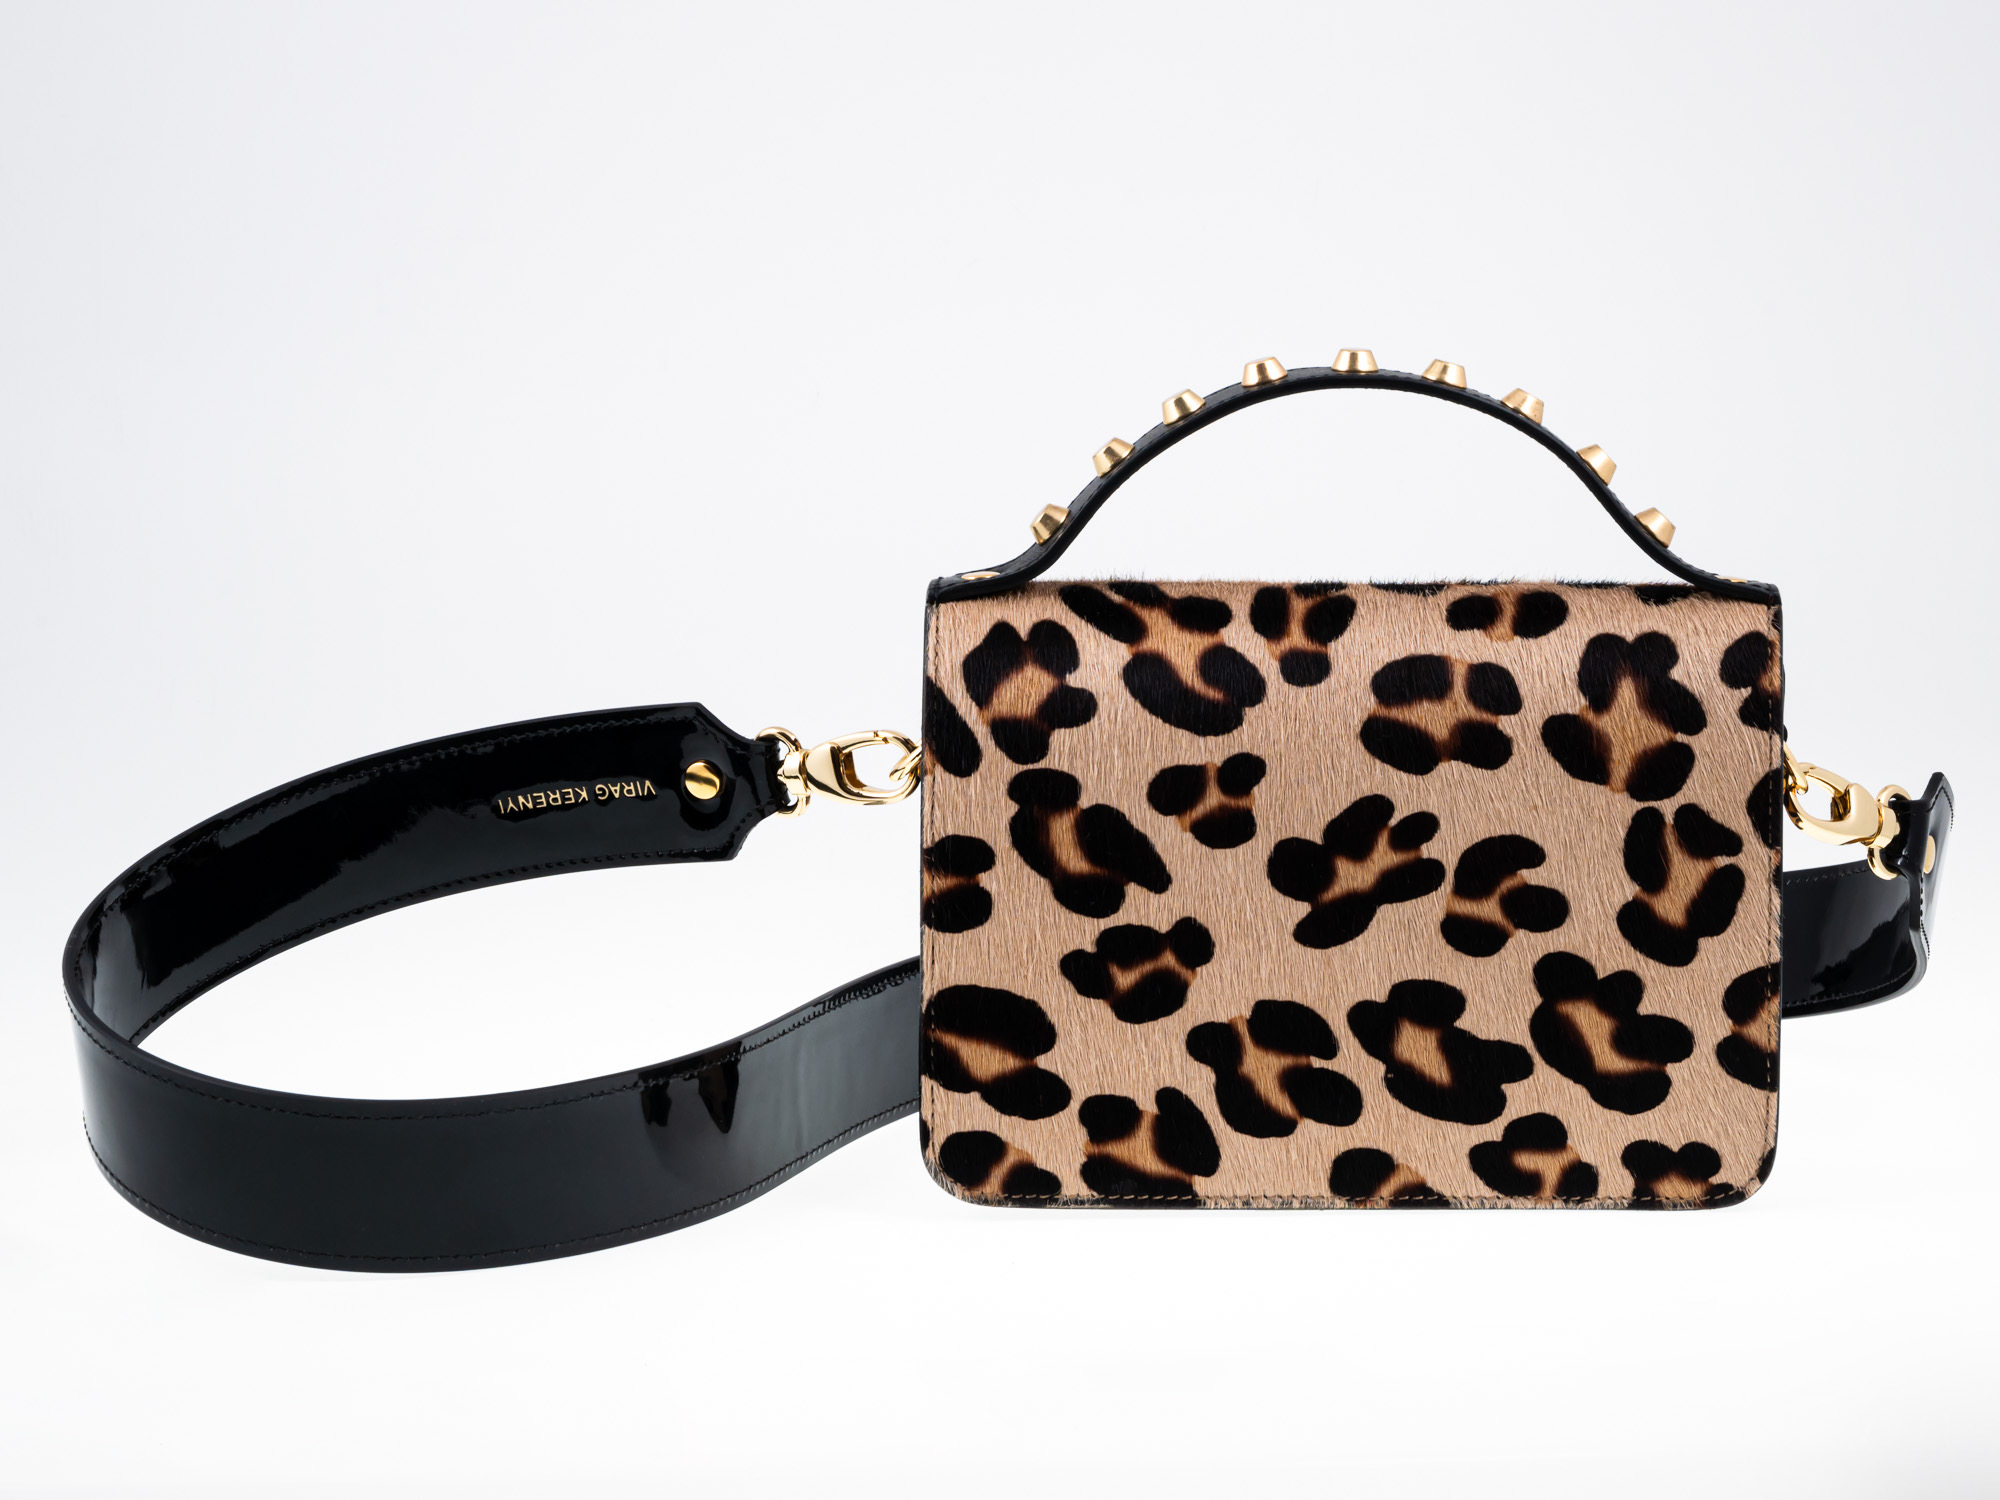 RACHEL /leopard/ bag - VIRAG KERENYI fashion designer webshop